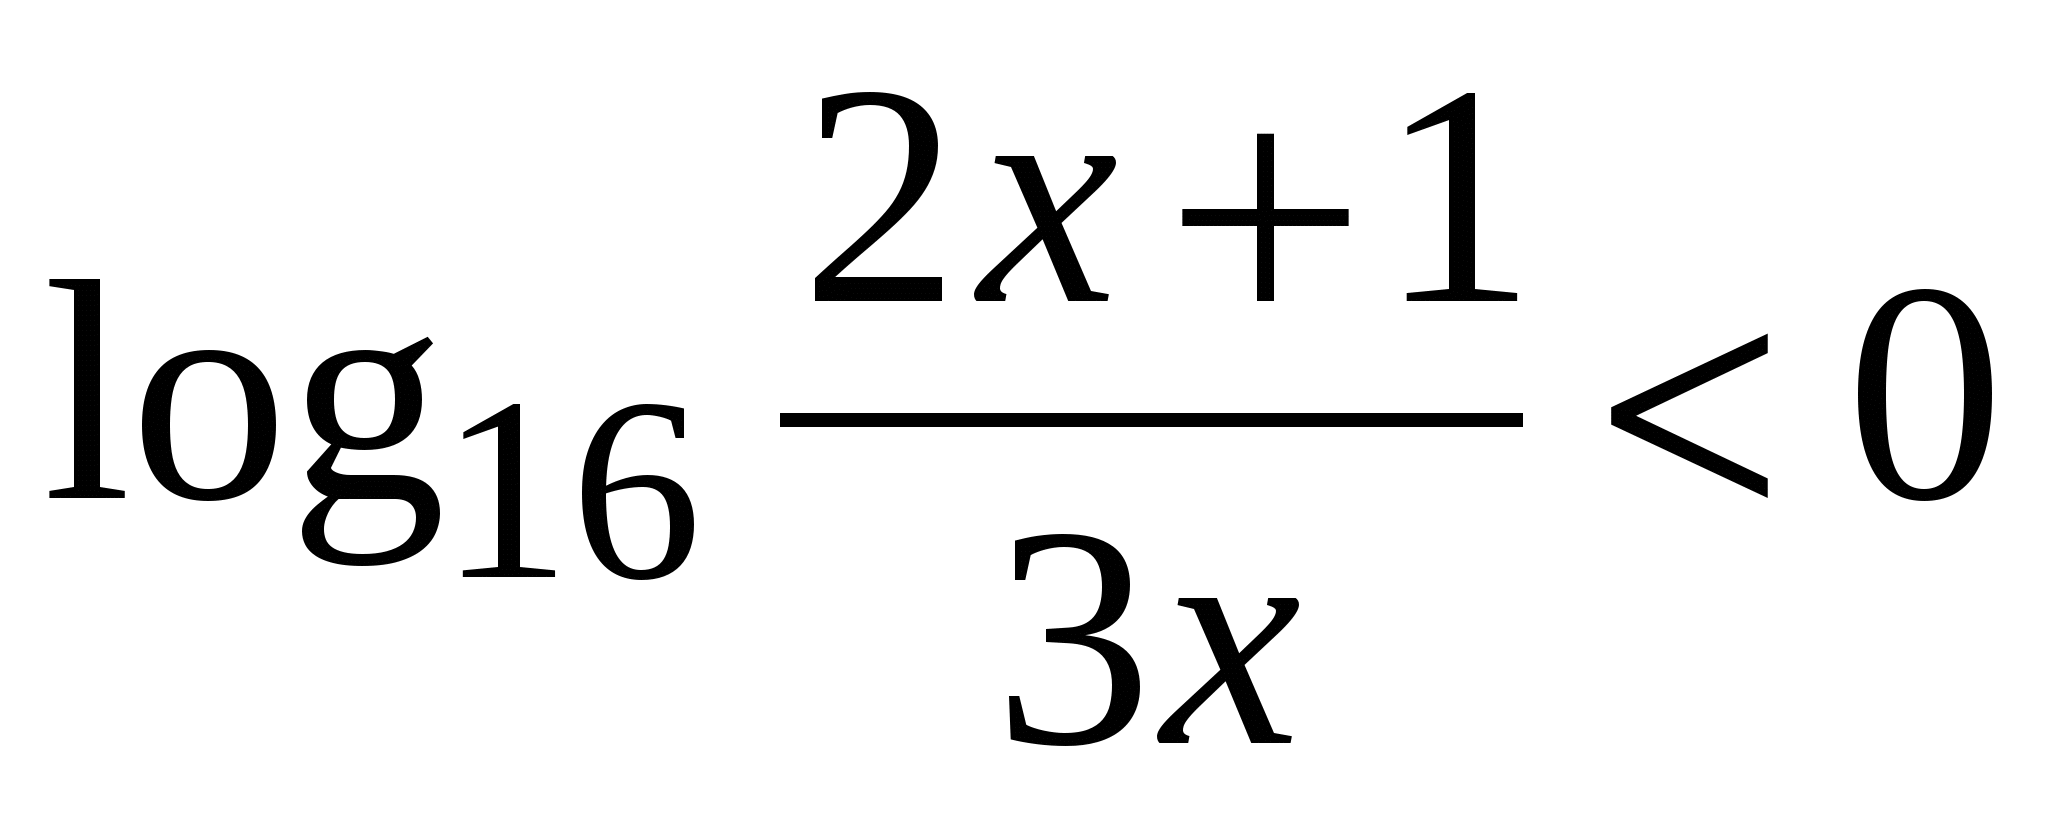 Методическое указание по выполнению практических работ по математике (1-2 курс)